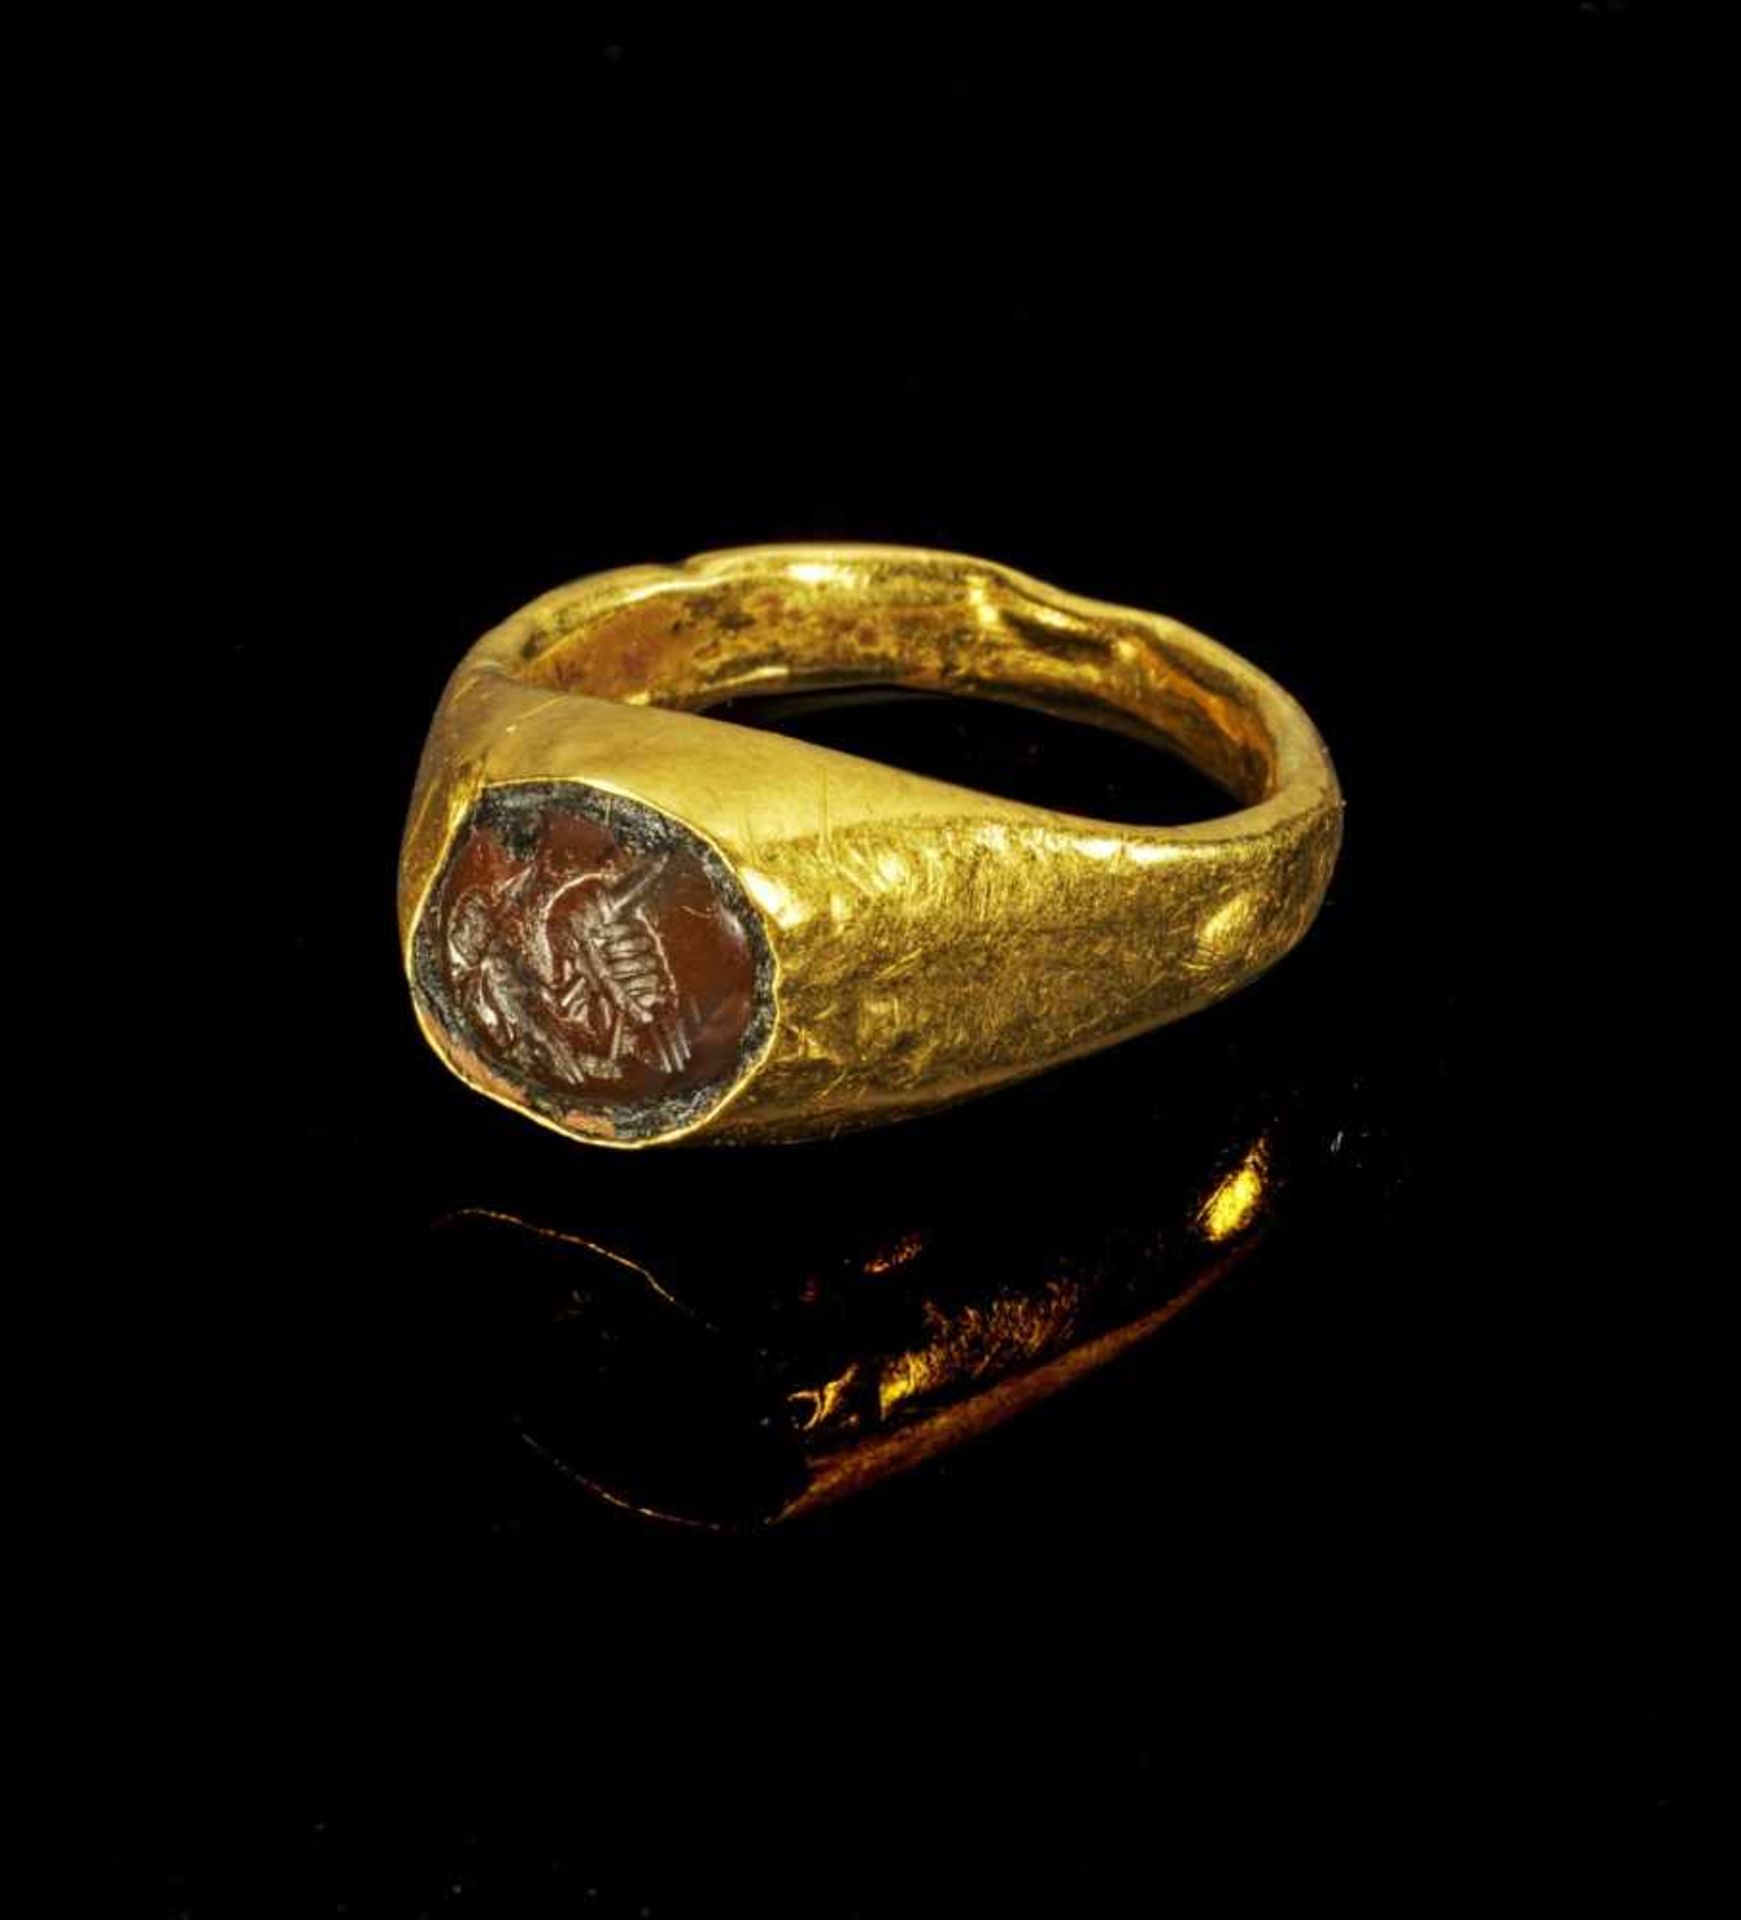 Goldfingerring mit Karneolgemme. Römisch, 1. Jh. n. Chr. 4,98g. Ringgröße 54 - 55. Schmale, nach